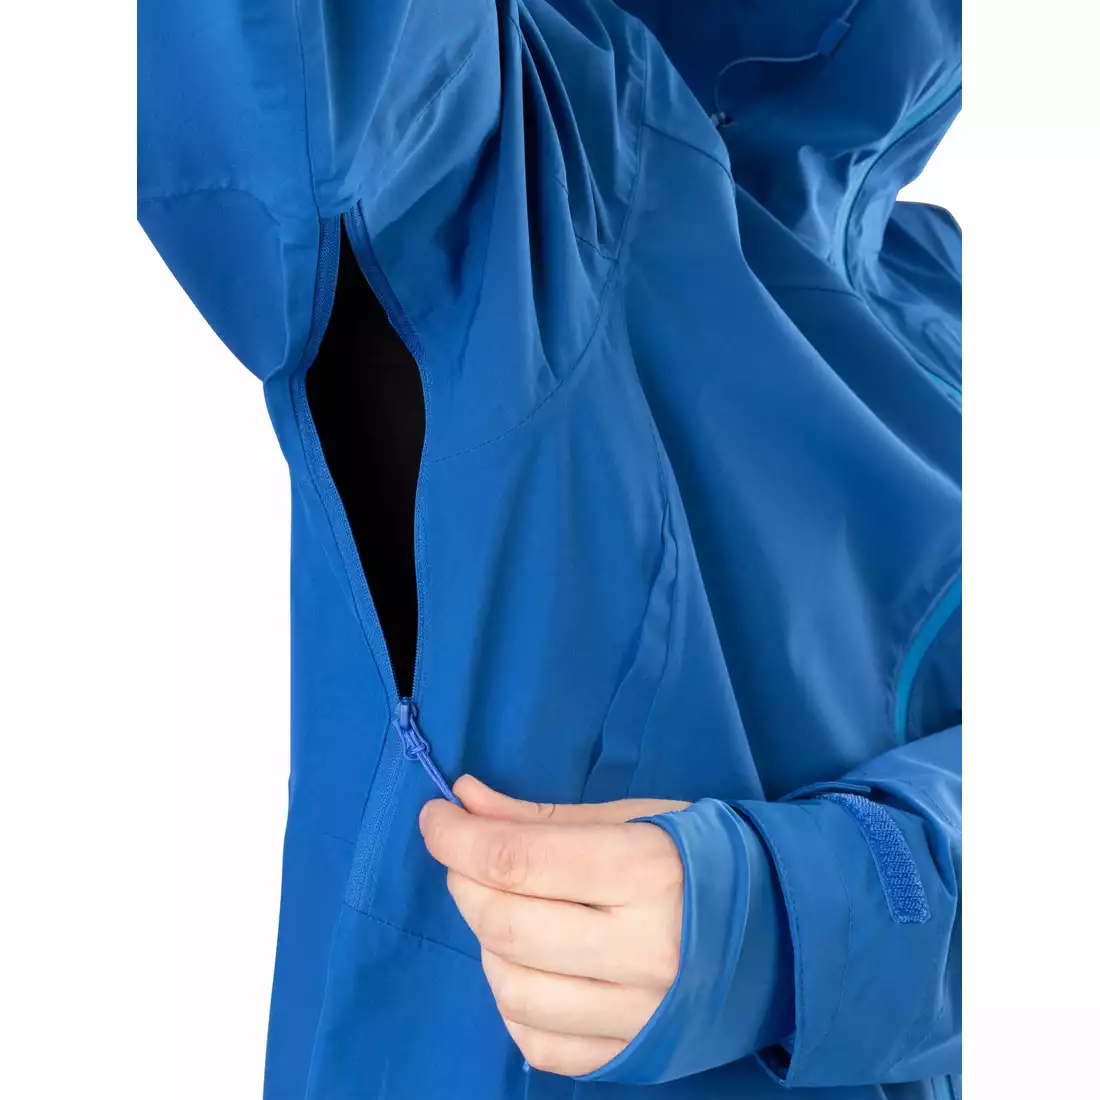 Pánská bunda do deště Viking Trek Pro Man 700/23/0905/1500 modrý